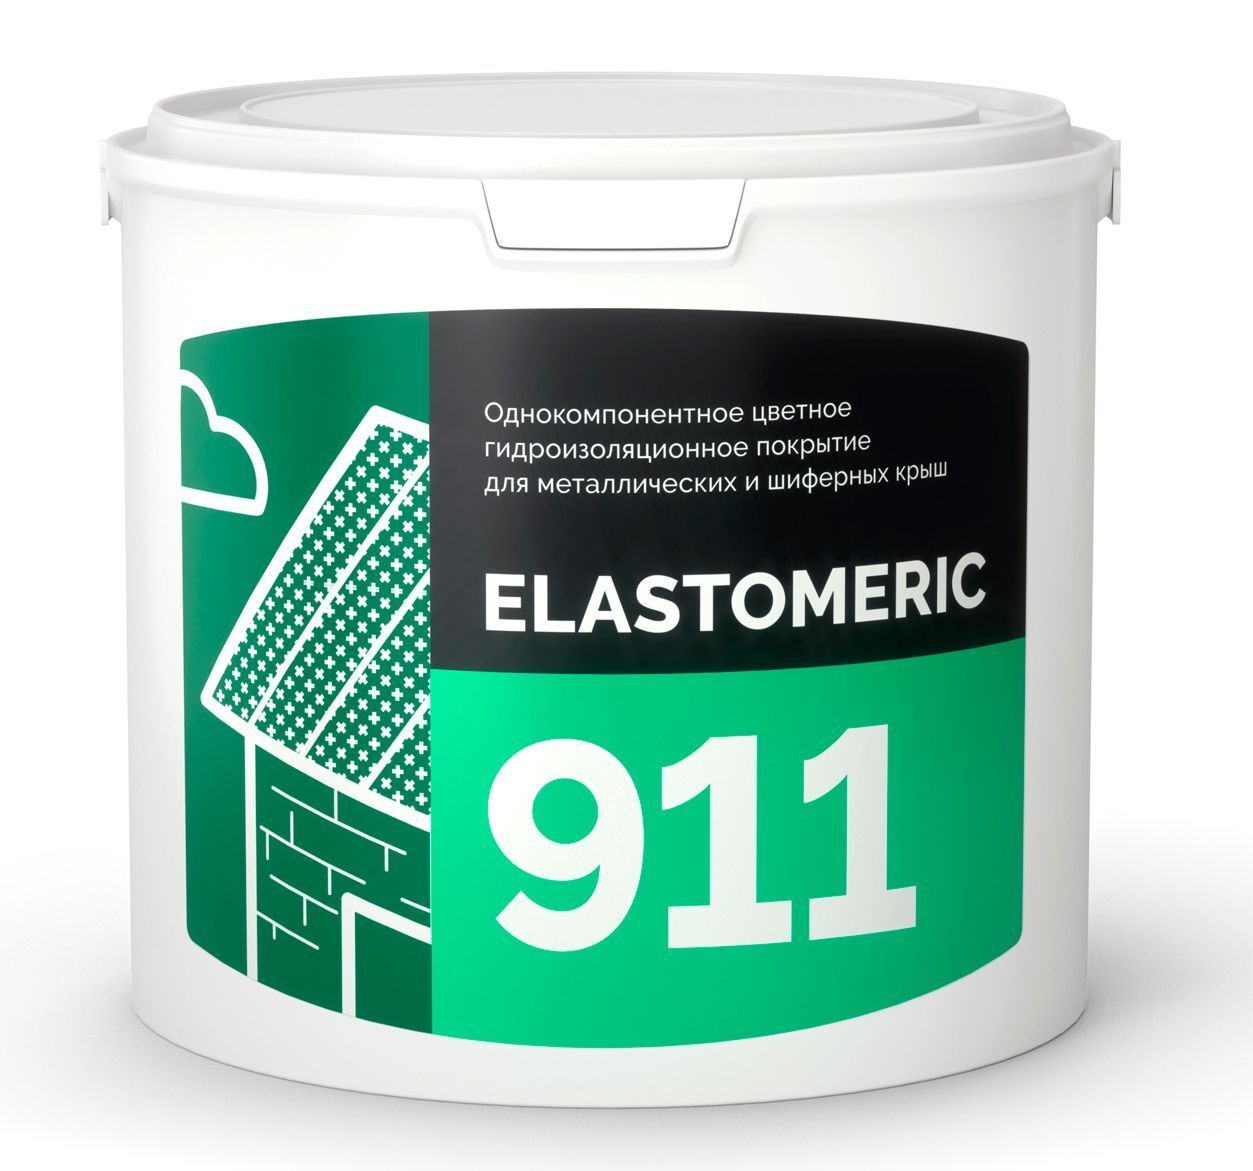 Гидроизоляция металлической и шиферной кровли - ELASTOMERIC 911 3 кг RAL 6005 зеленый мох